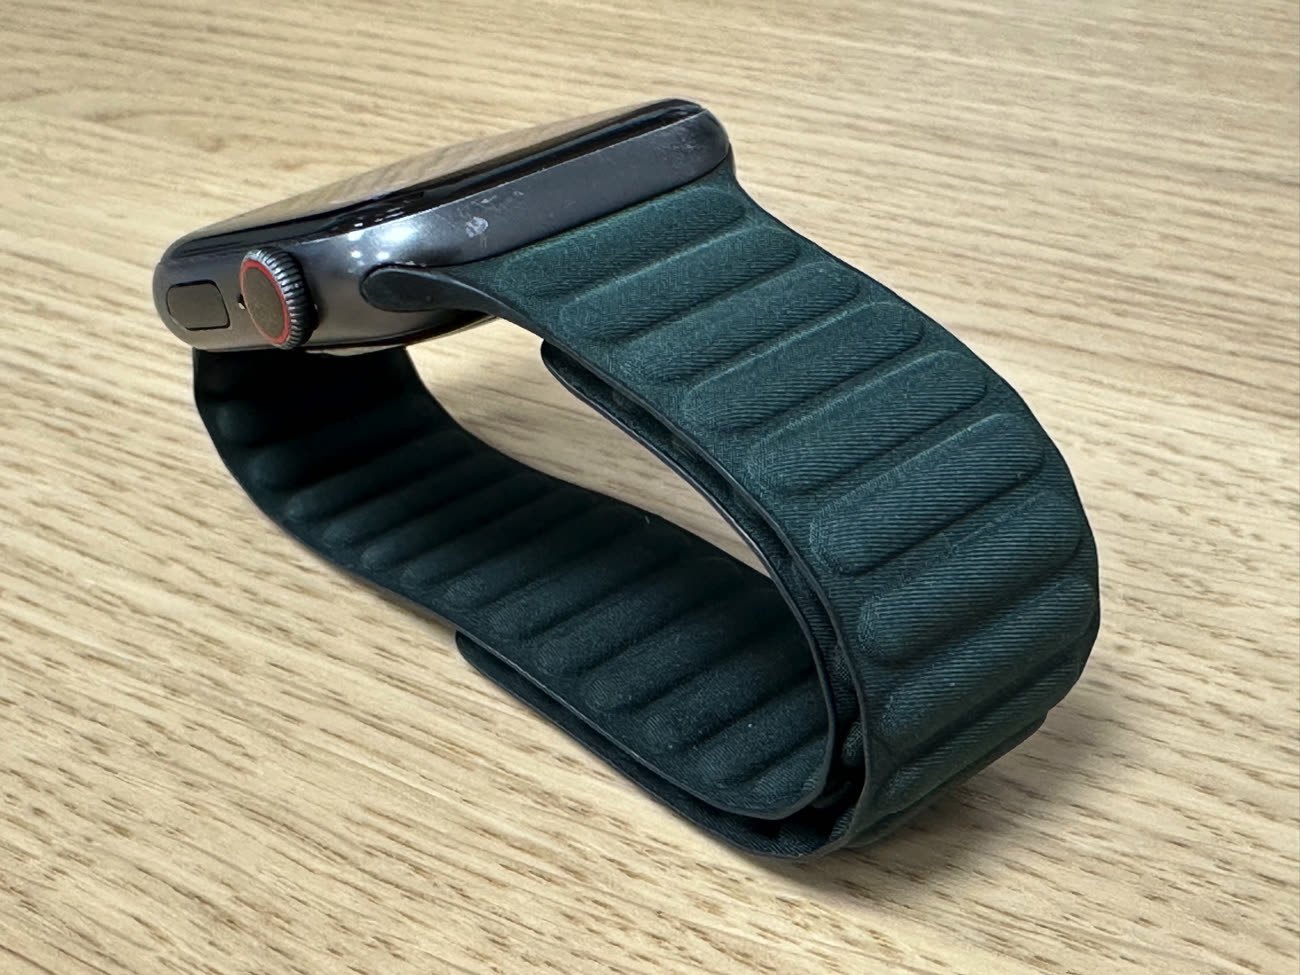 L'Apple Watch pourrait avoir droit à de nouveaux bracelets en cuir